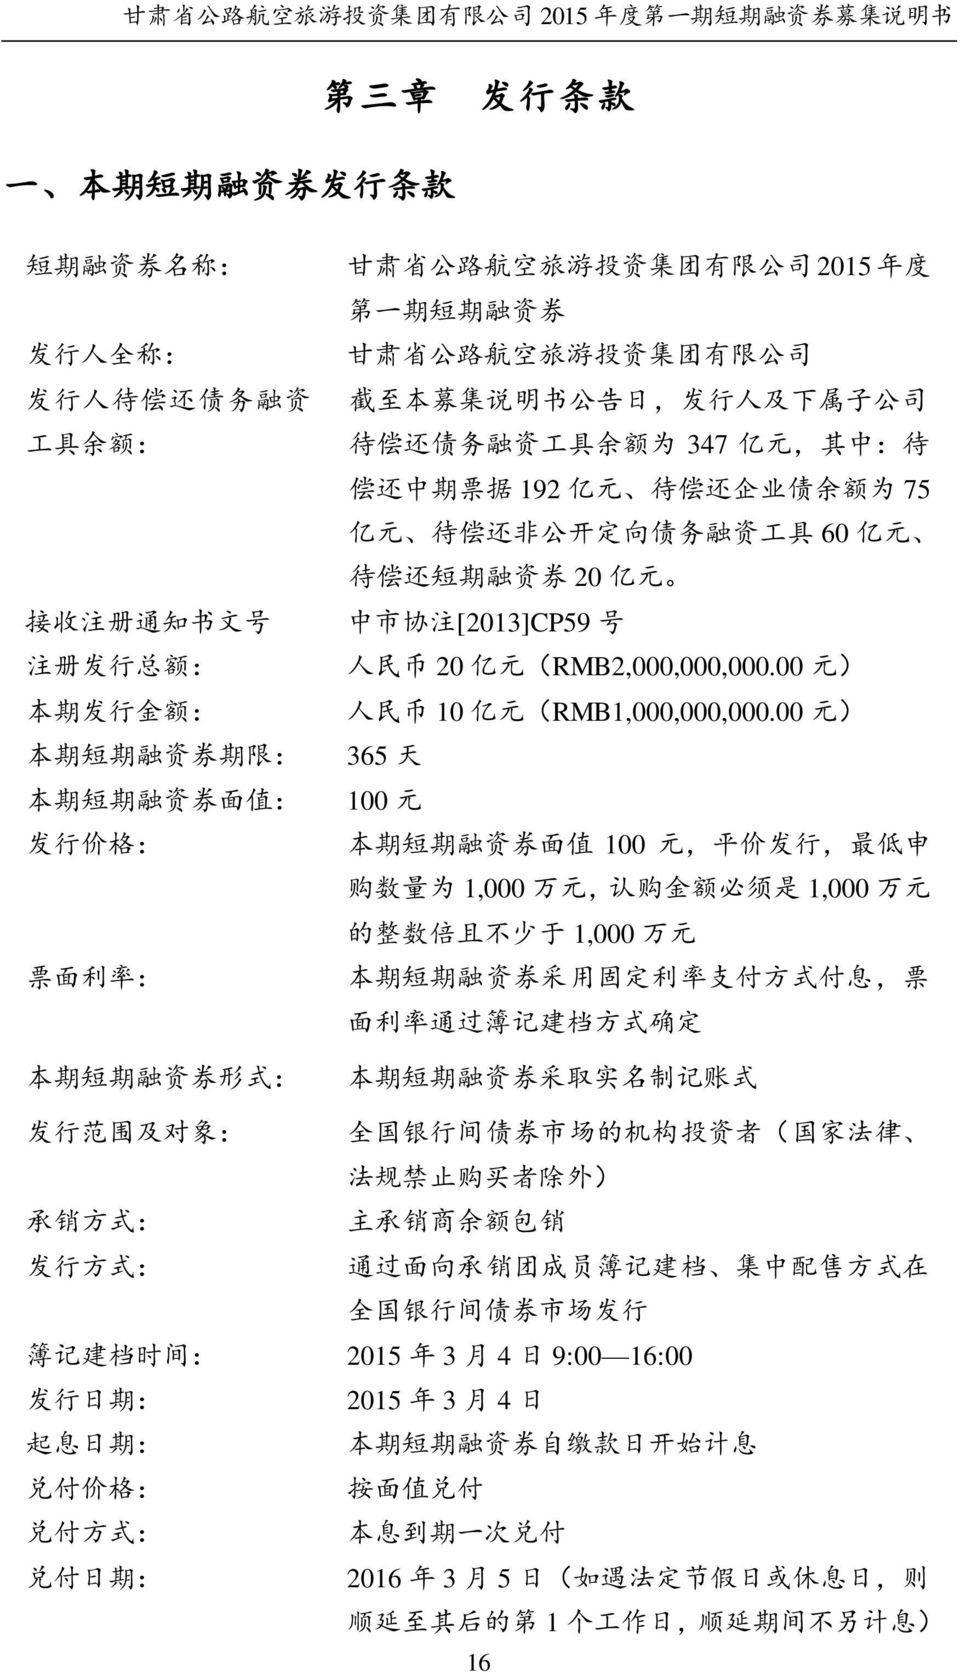 注 [2013]CP59 号 注 册 发 行 总 额 : 人 民 币 20 亿 元 (RMB2,000,000,000.00 元 ) 本 期 发 行 金 额 : 人 民 币 10 亿 元 (RMB1,000,000,000.